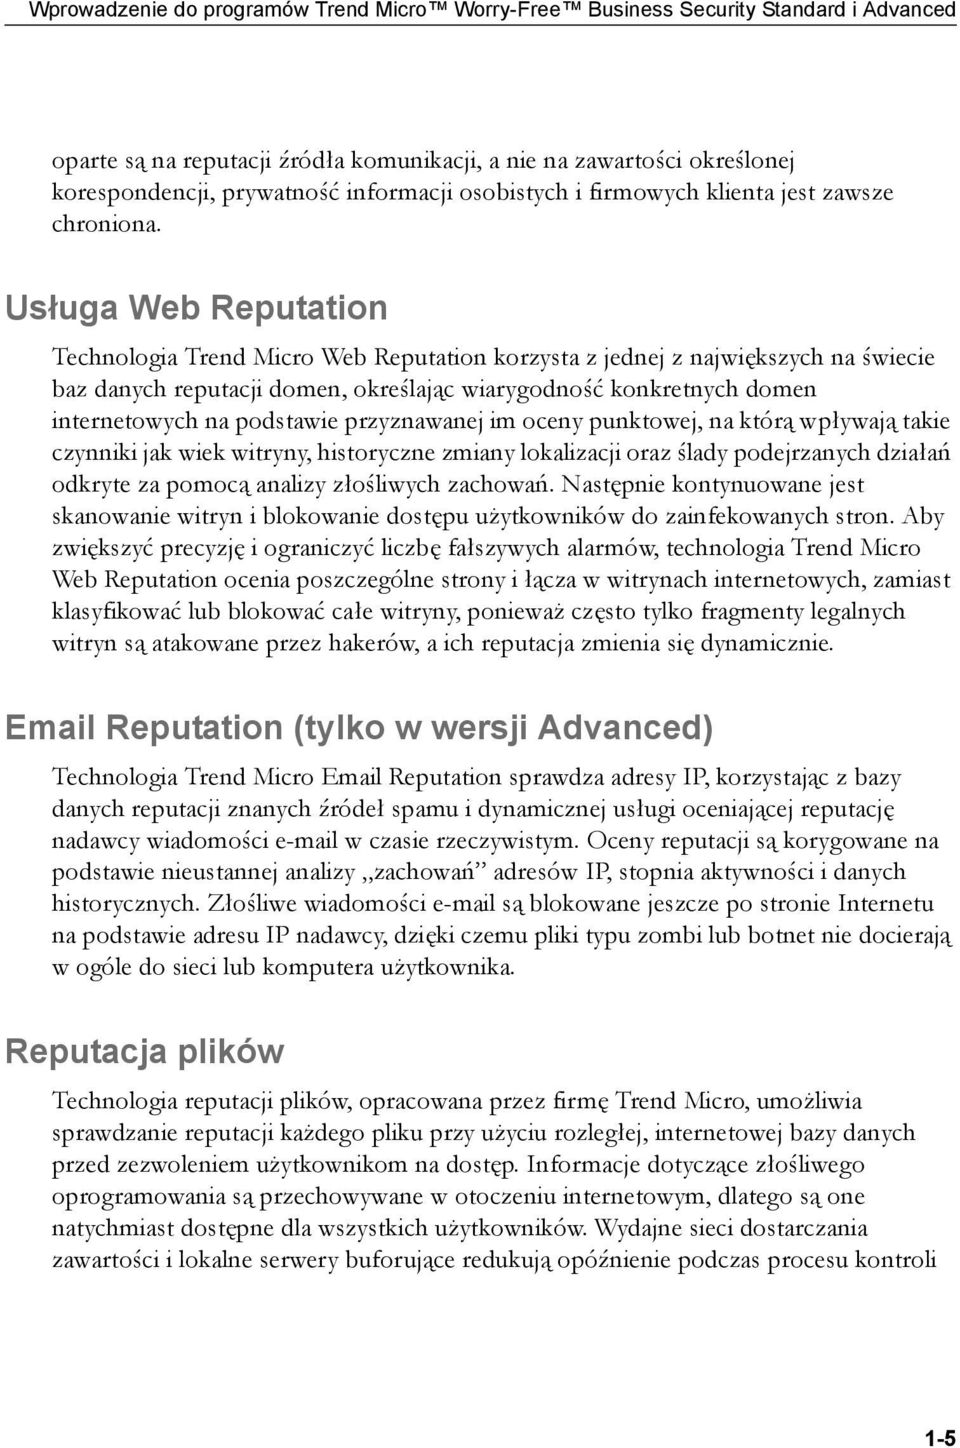 Usługa Web Reputation Technologia Trend Micro Web Reputation korzysta z jednej z największych na świecie baz danych reputacji domen, określając wiarygodność konkretnych domen internetowych na